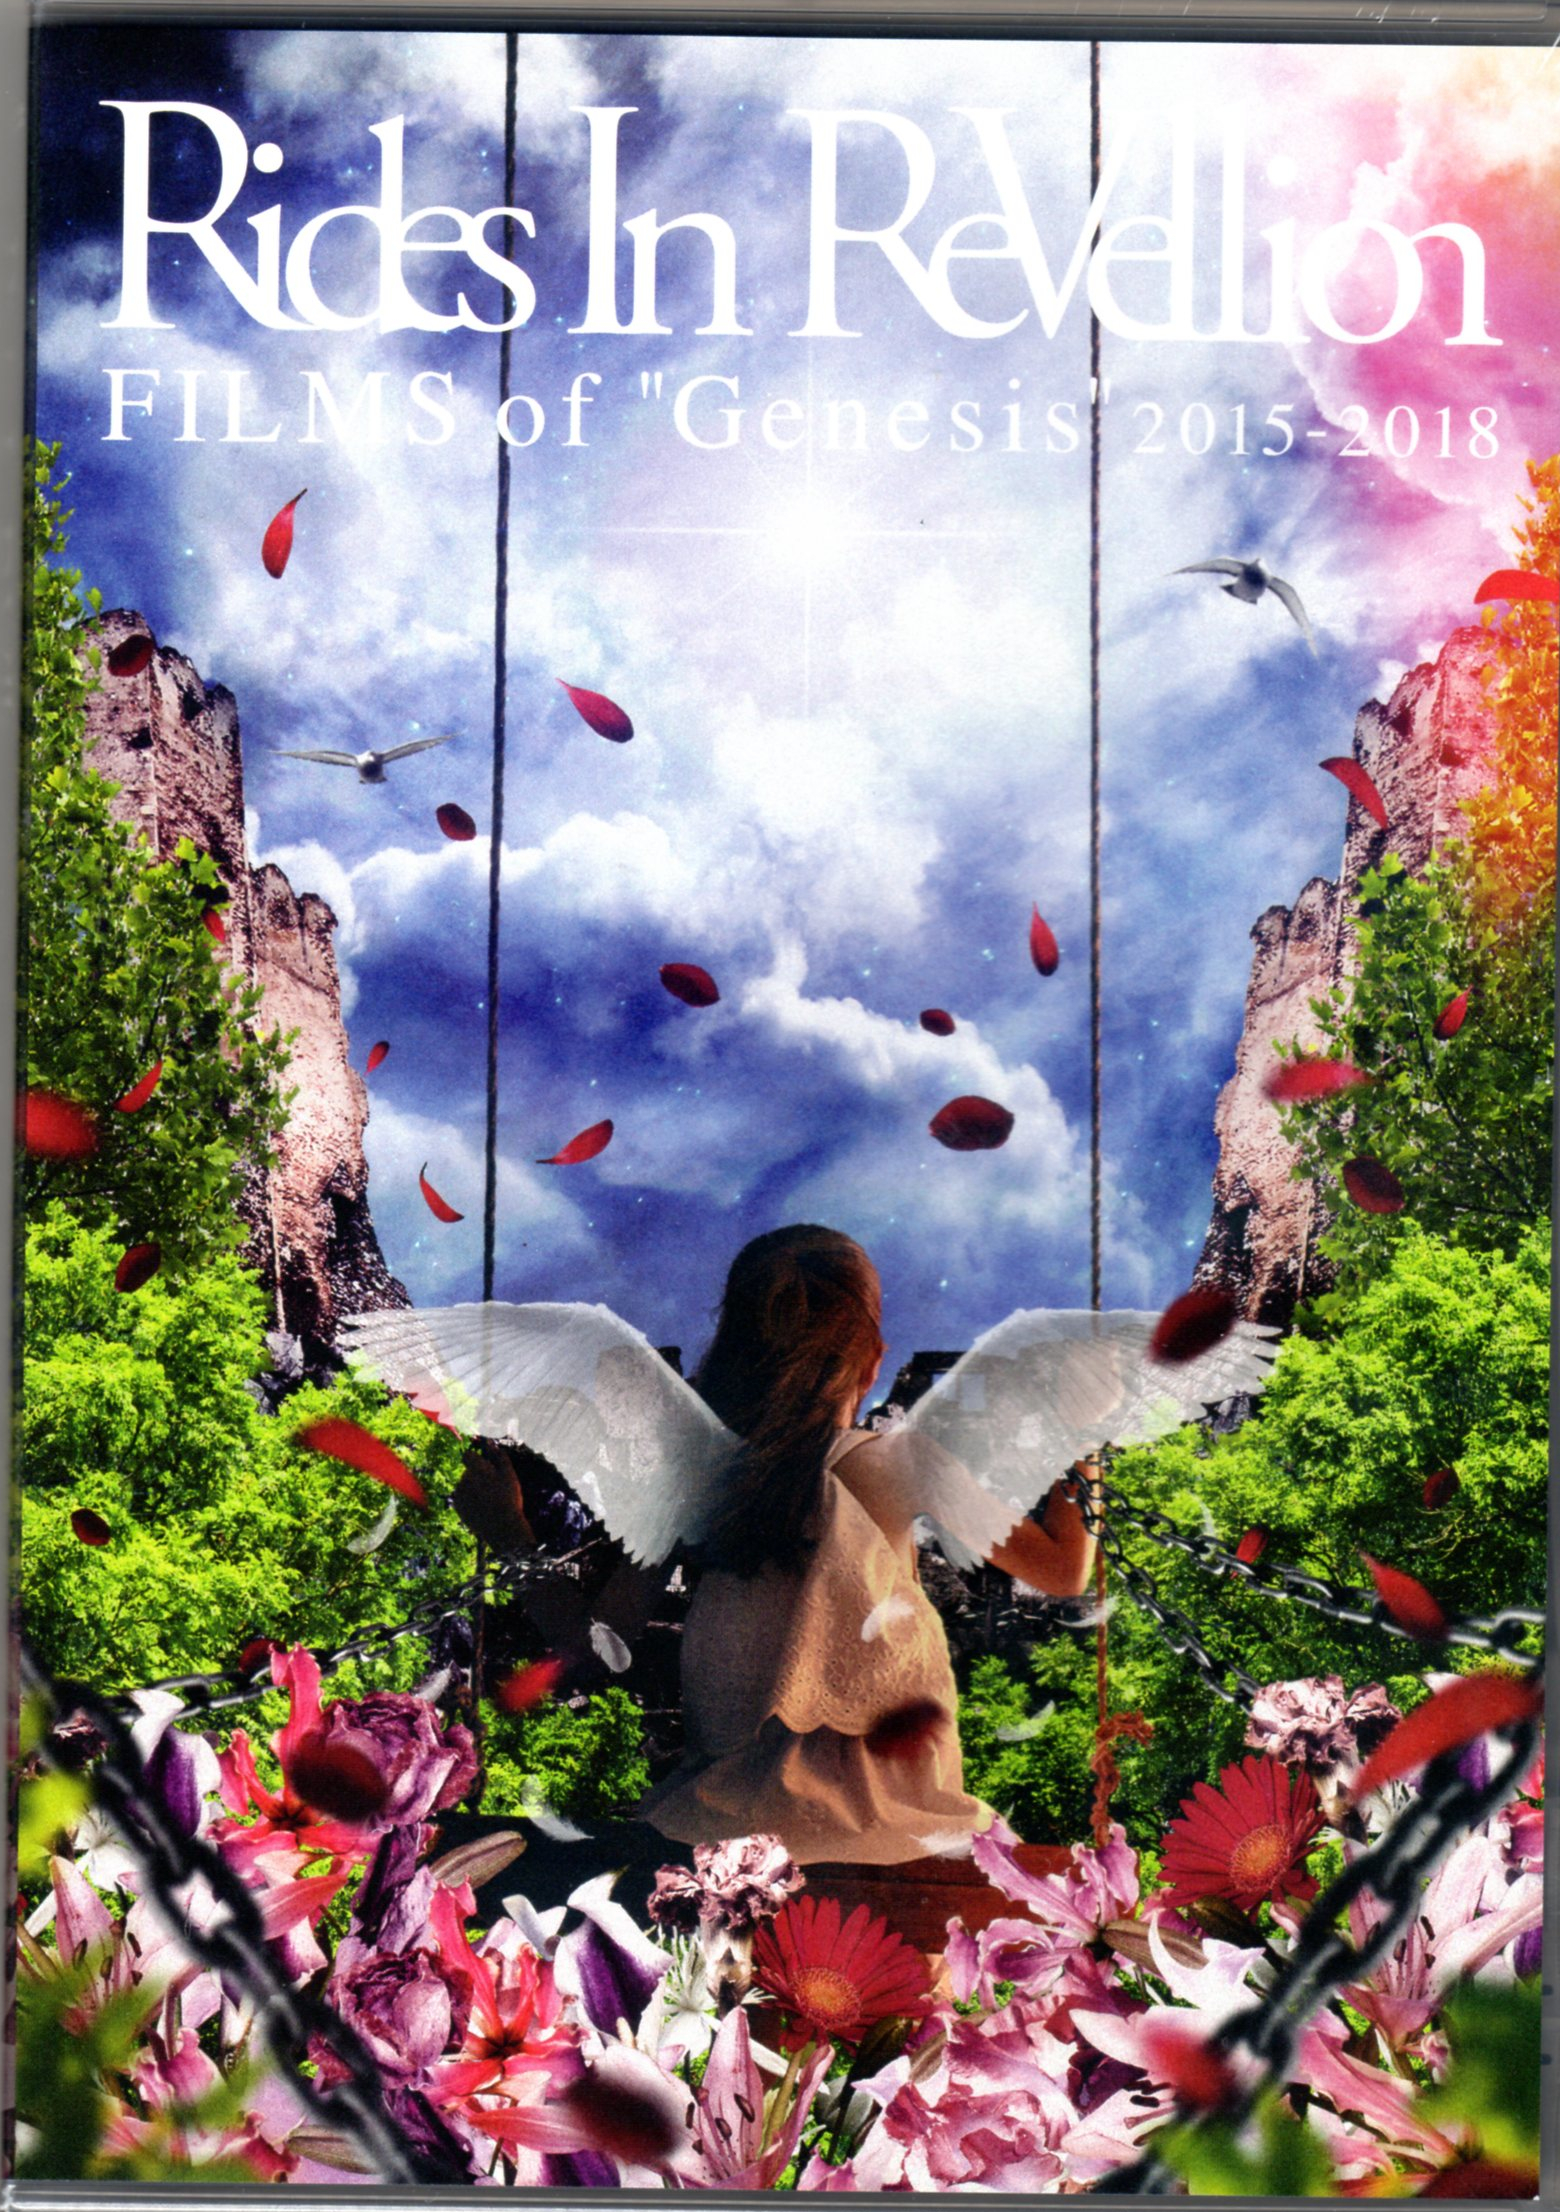 ライズインリベリオン の DVD FILMS of “Genesis” 2015-2018